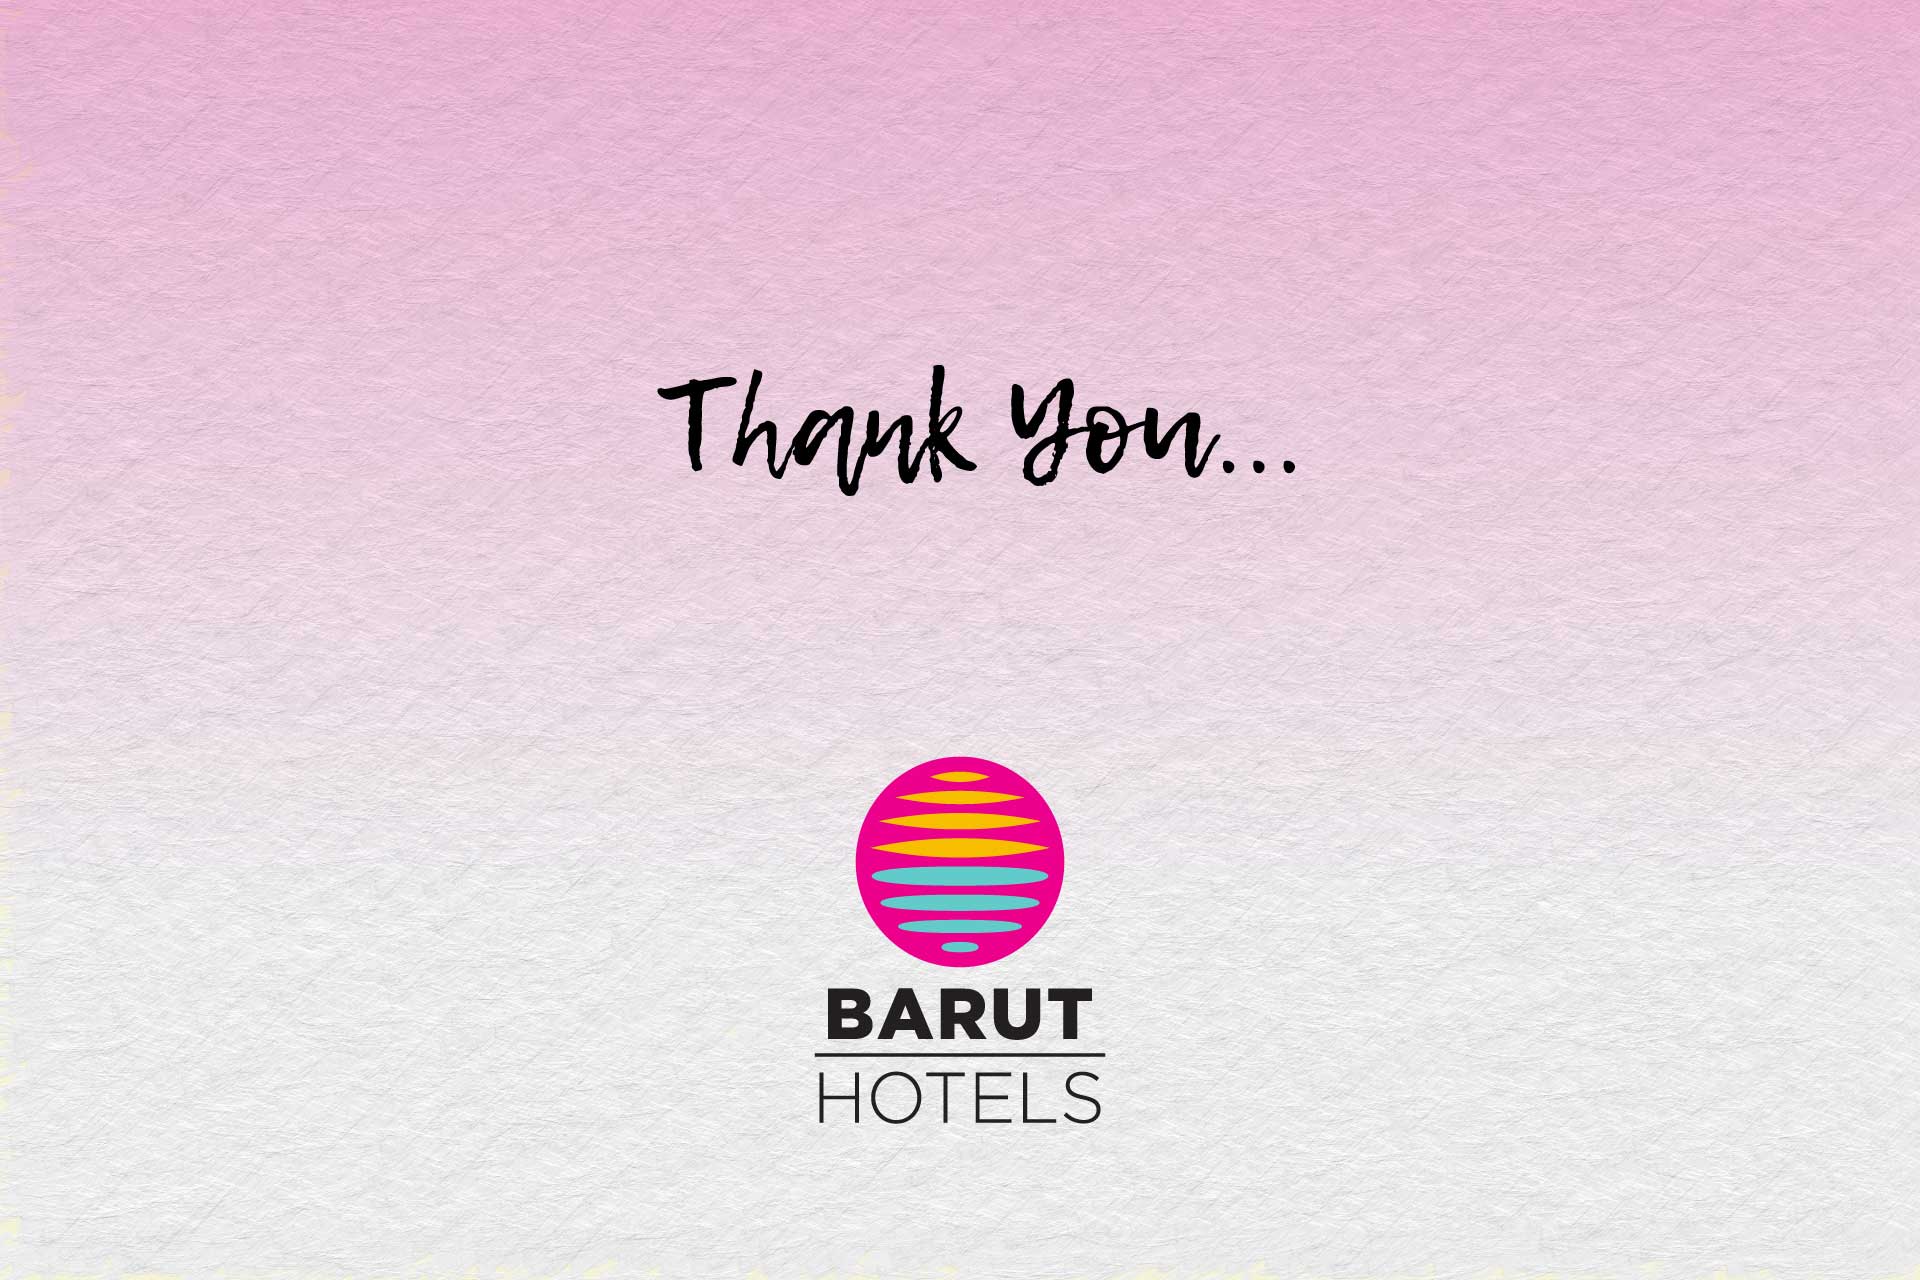 Barut Hotels’e Ve Türk Turizmine Güvendiğiniz İçin Teşekkür Ederiz.